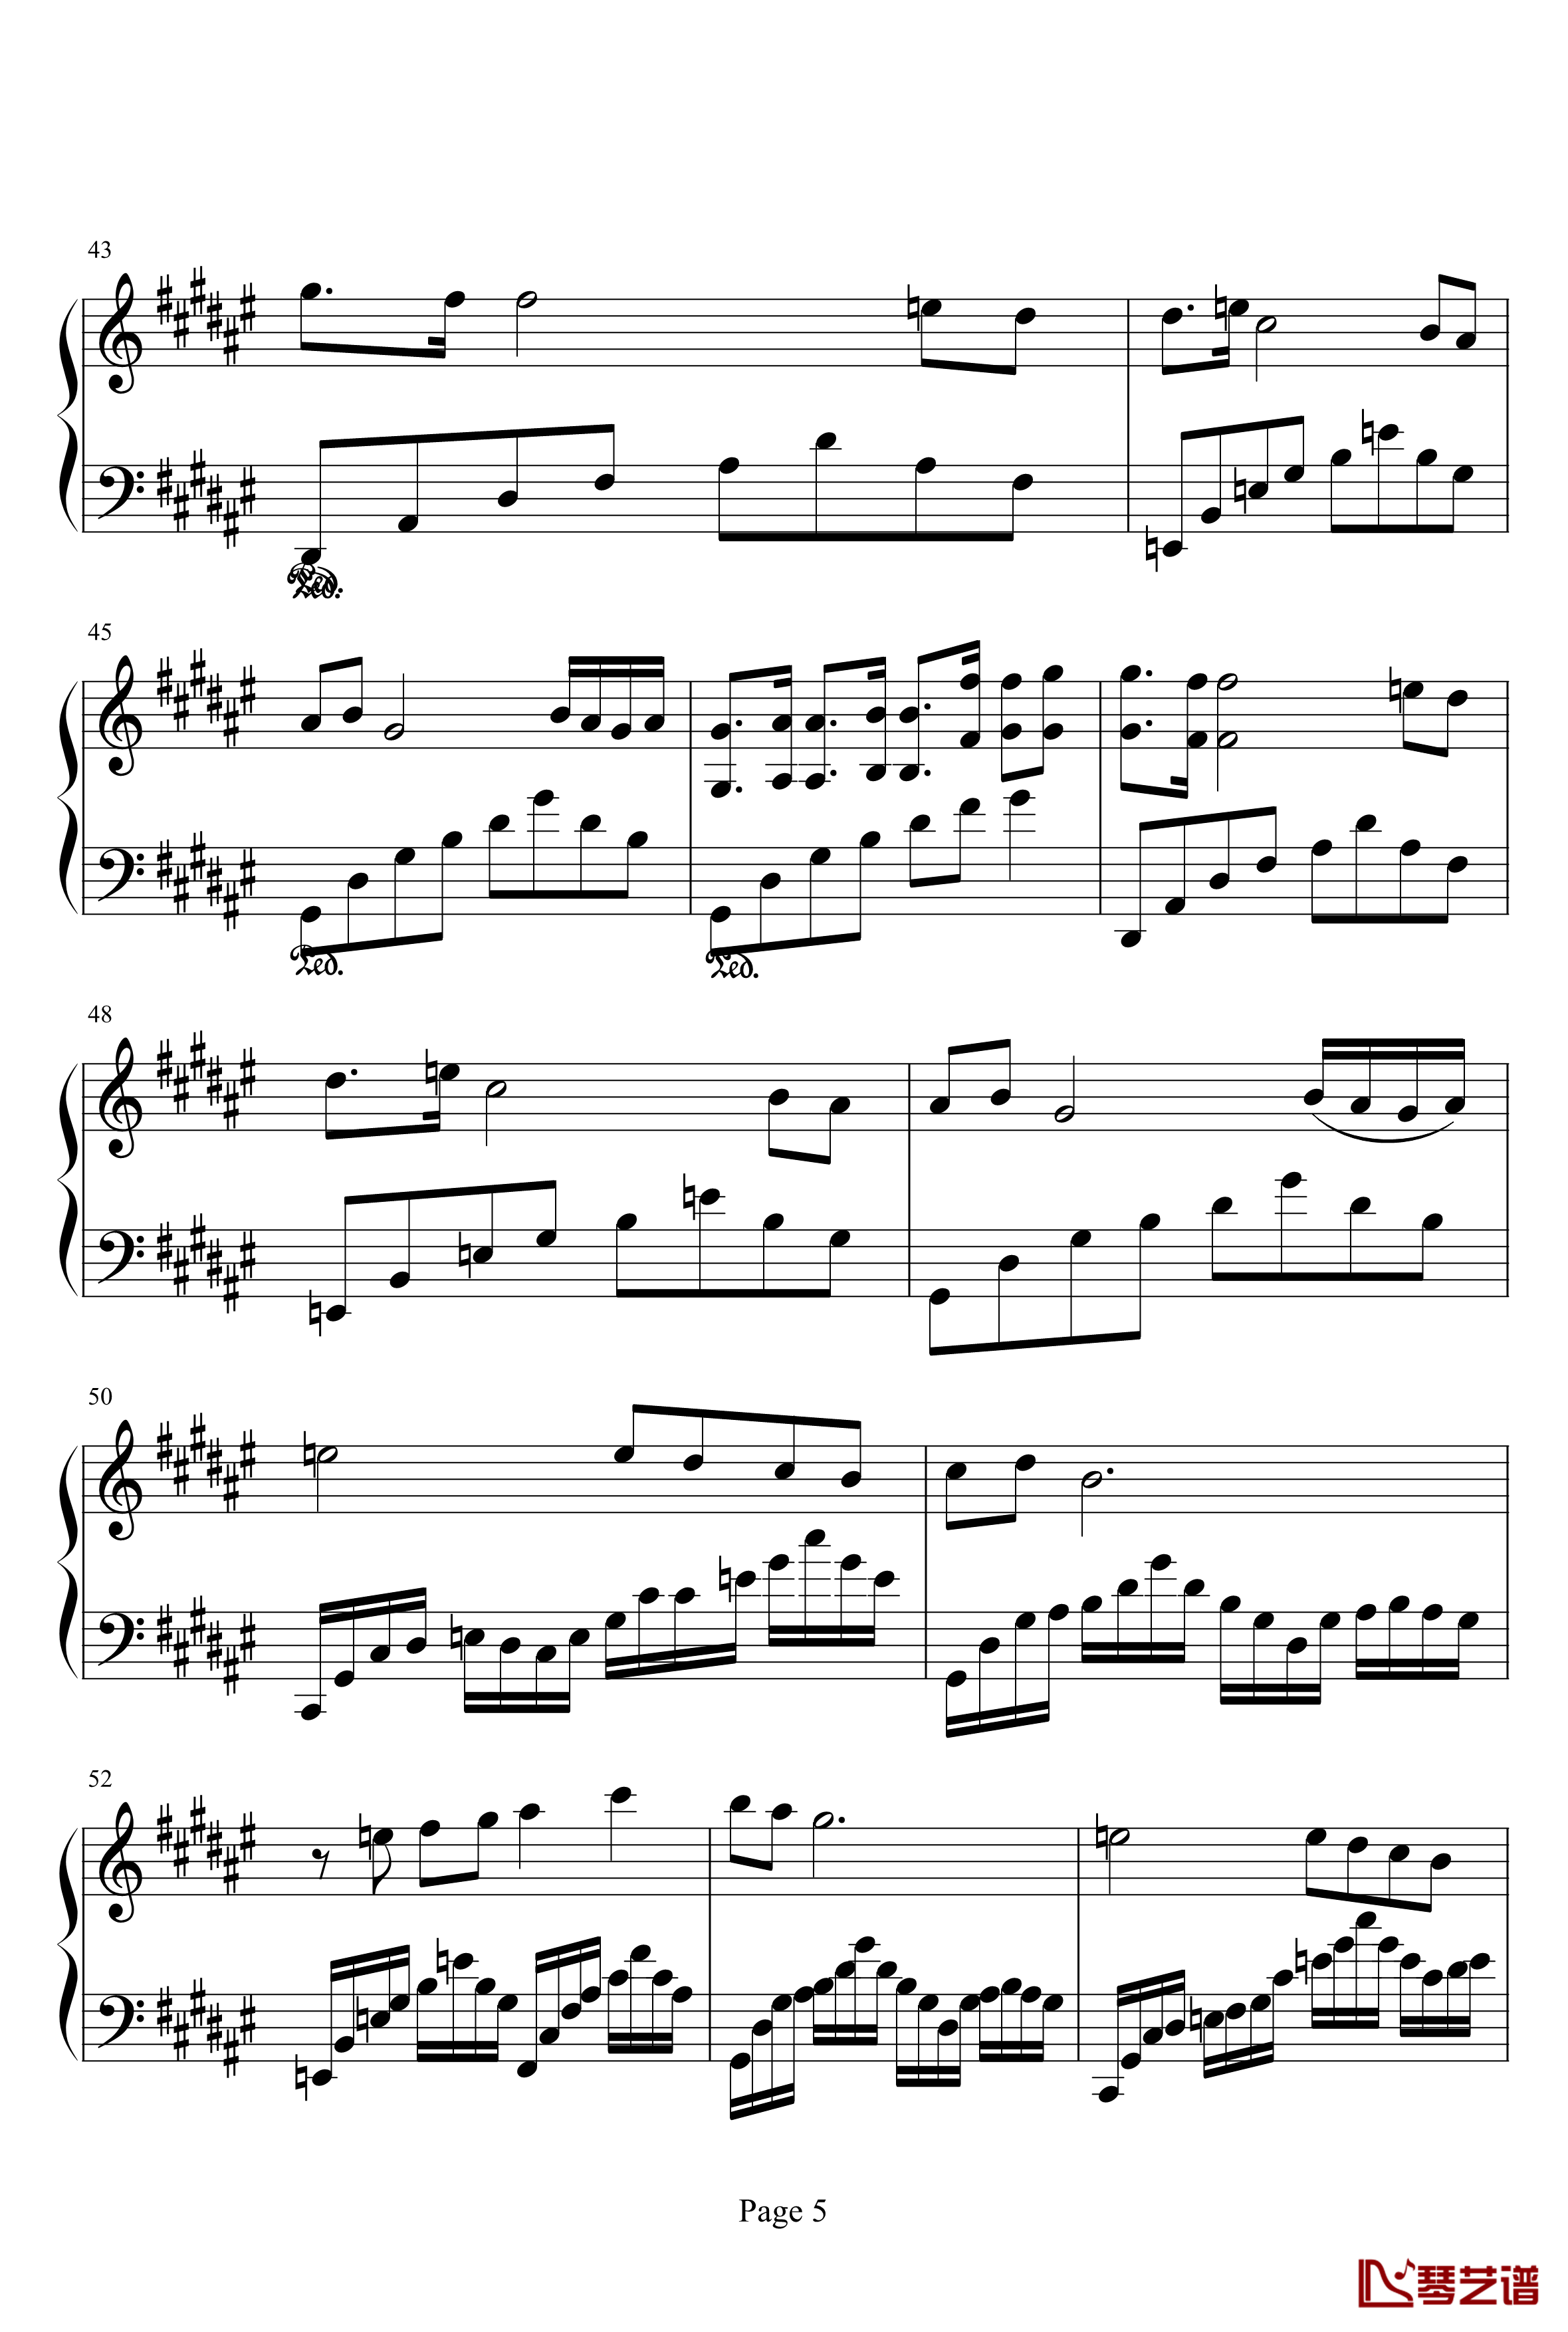 亡灵序曲钢琴谱-完整版-亡灵序曲5